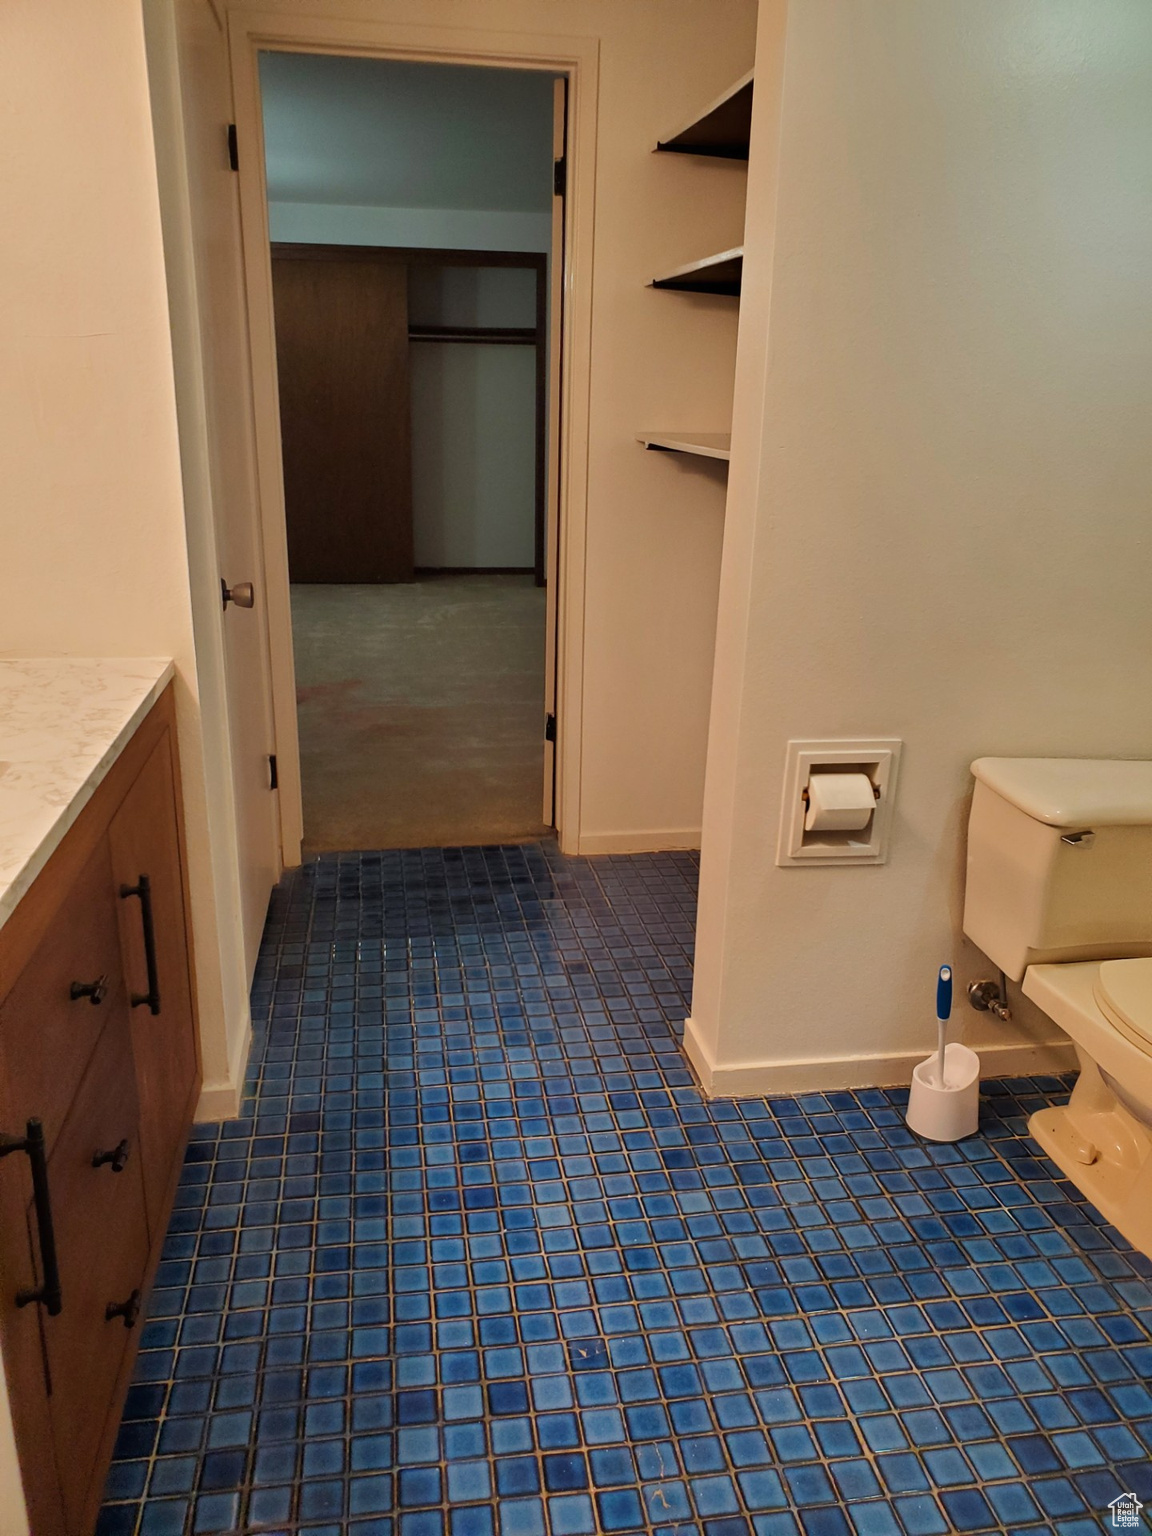 Corridor featuring dark tile flooring